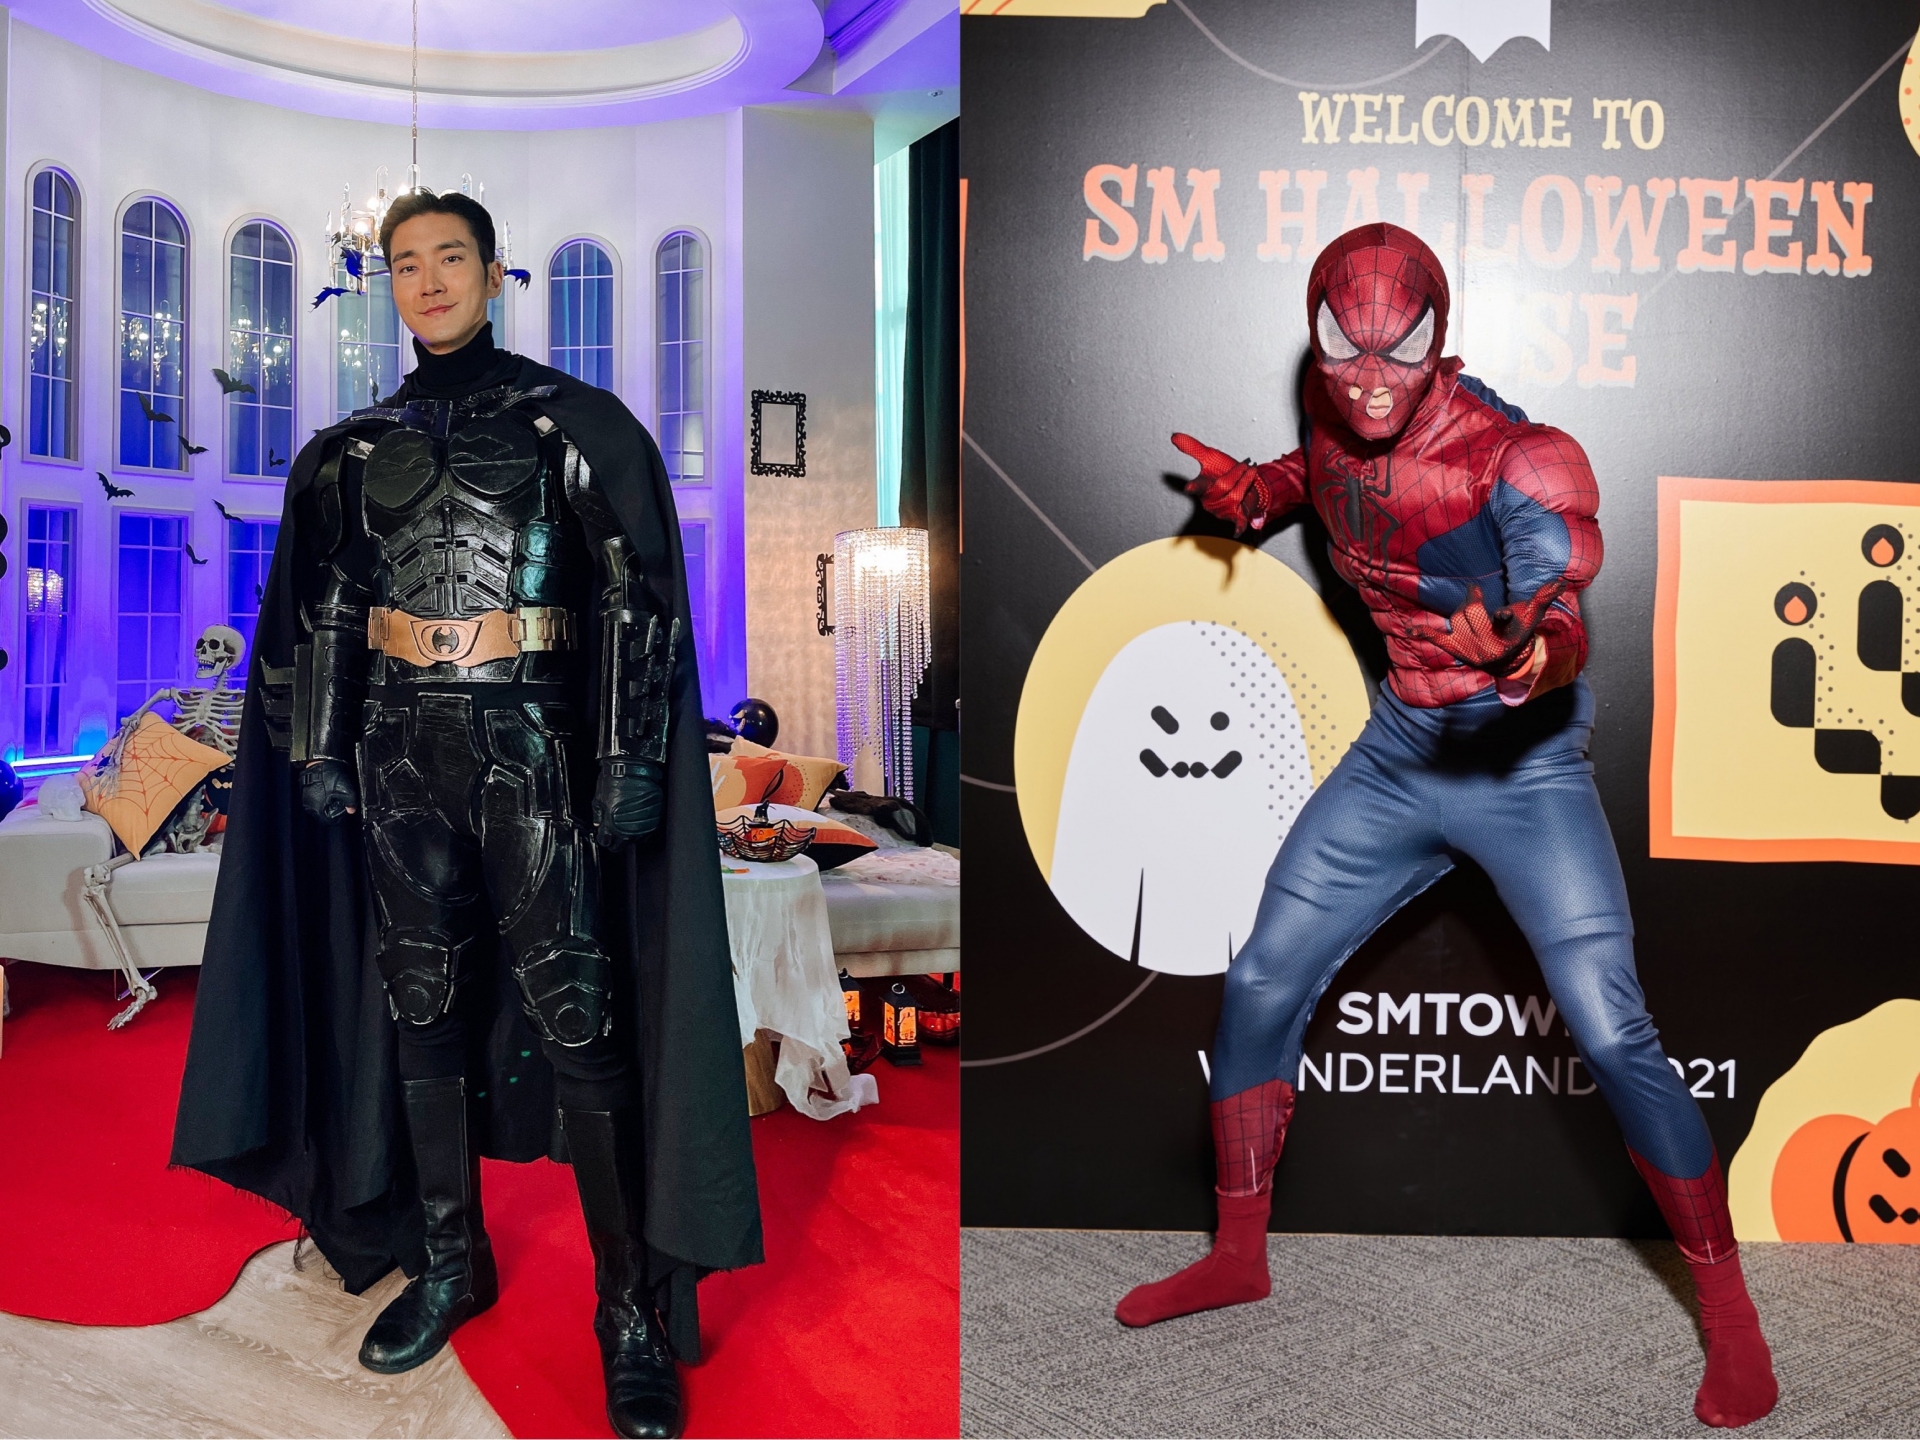 Các nhân vật siêu anh hùng là nhân vật không thể thiếu trong các bữa tiệc hoá trang. Anh chàng Siwon (Super Junior) lựa chọn trở thành Batman còn Mark (NCT) lại hoá trang thành Spider Man nhưng có vẻ hơi 'lỗi' vì chiếc mặt nạ.